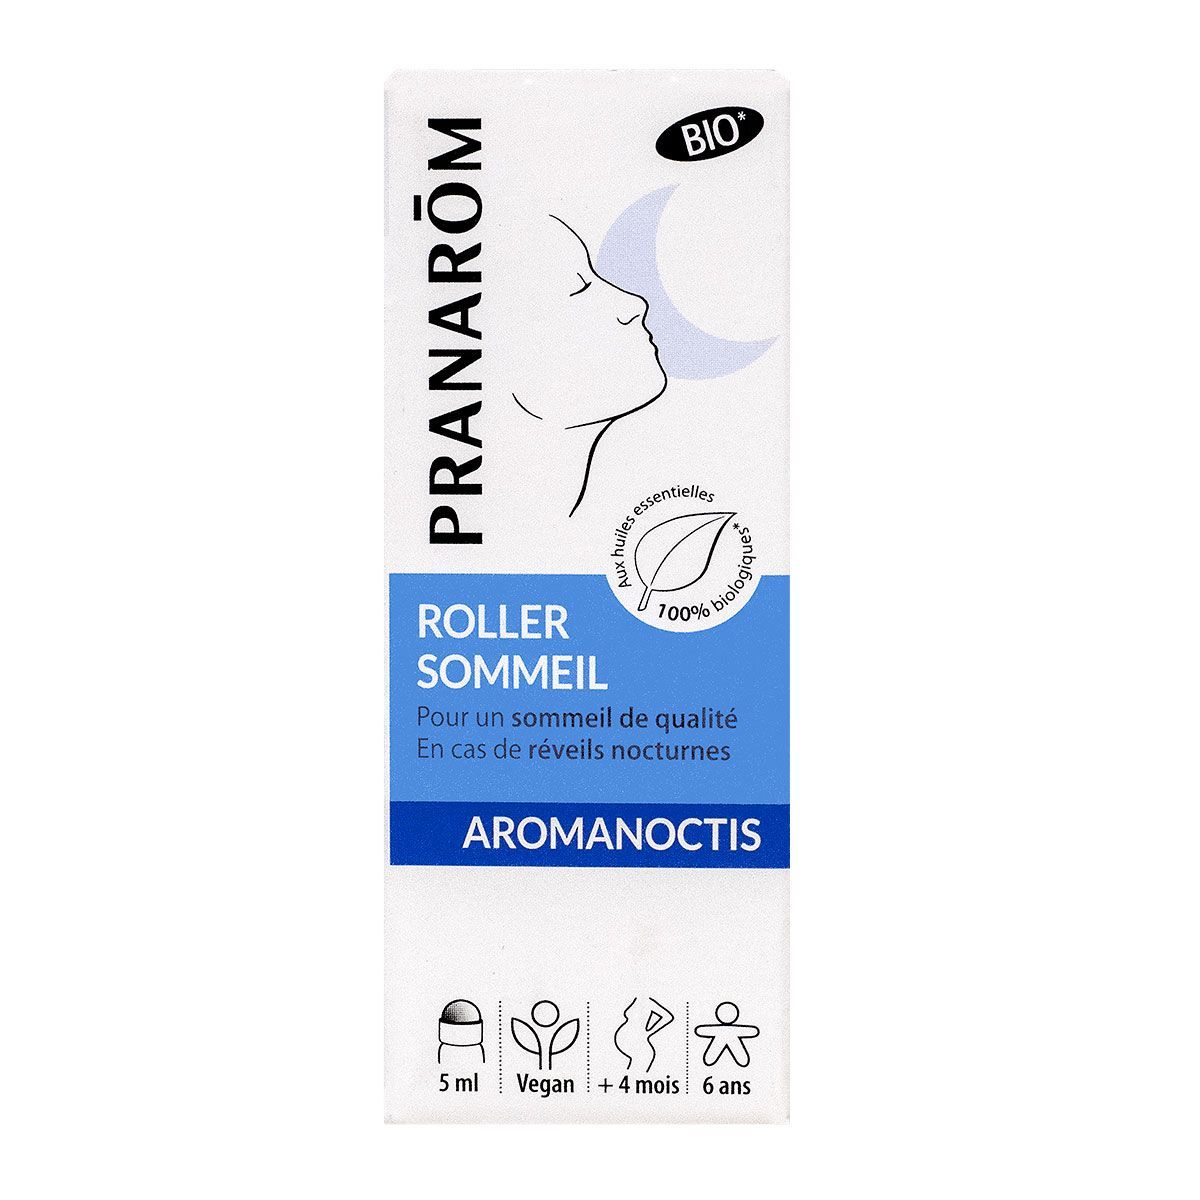 Roller sommeil Aromanoctis Bio - Pranarôm